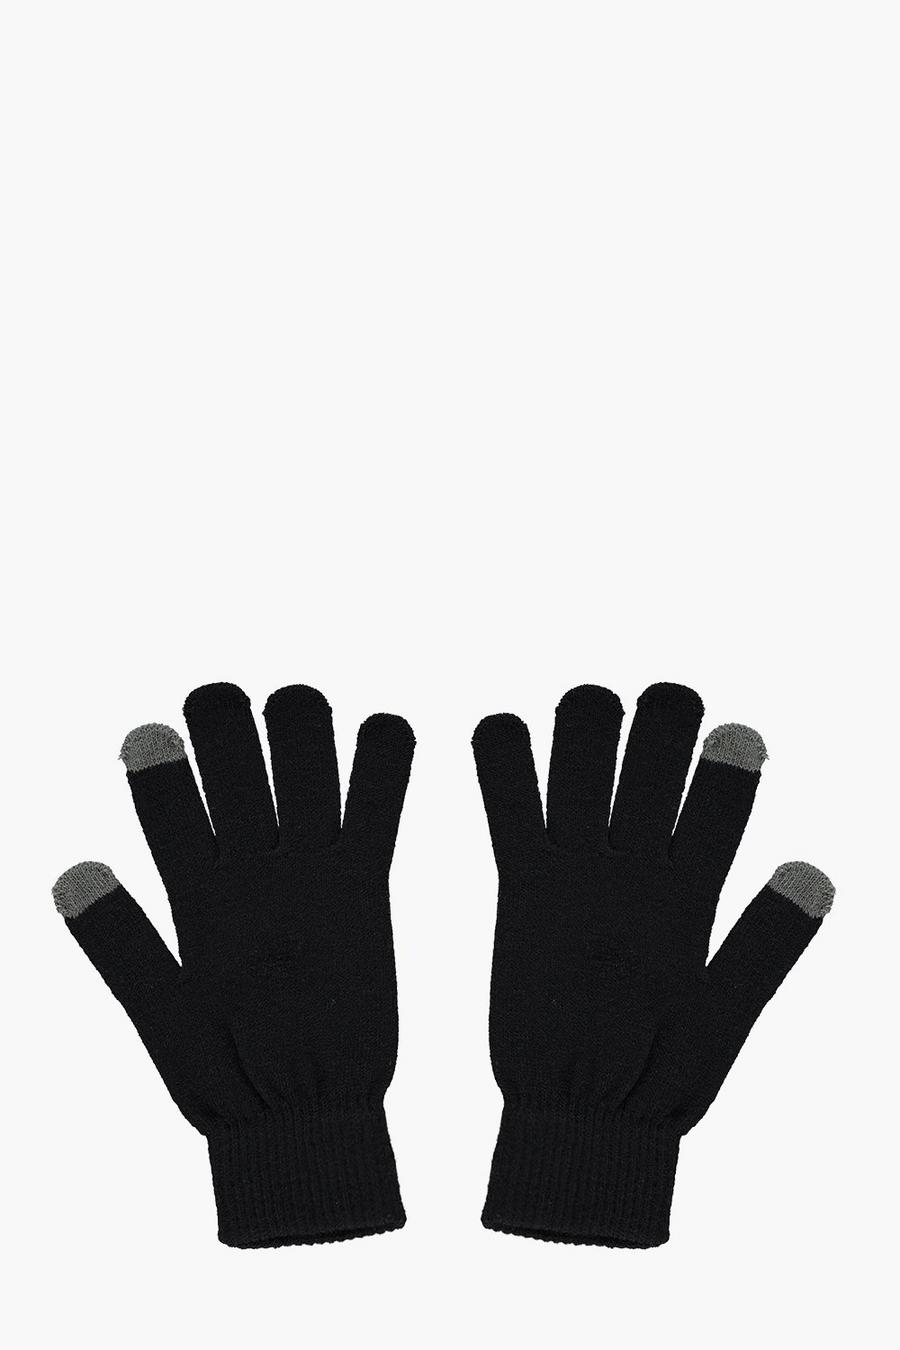 Gants thermiques pour écran tactile, Noir black